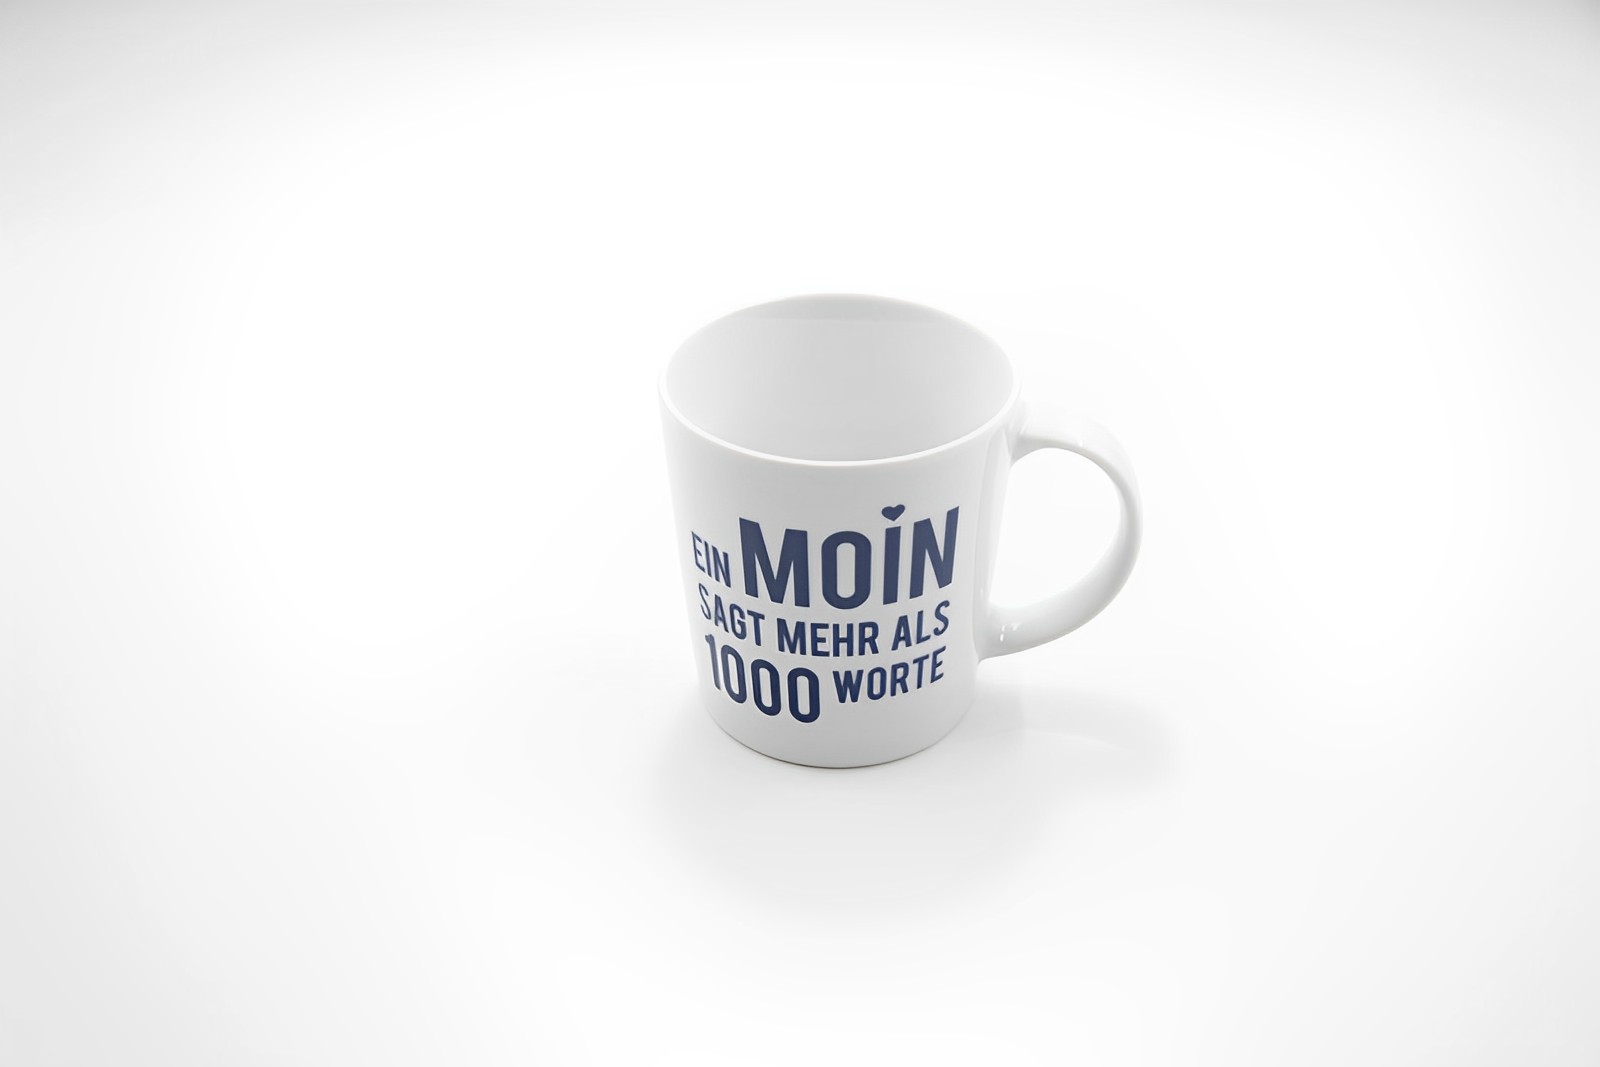 Kaffeetasse Moin SAGT MEHR ALS 1000 WORTE Porzellan 350ml Maritim Landhausstil 